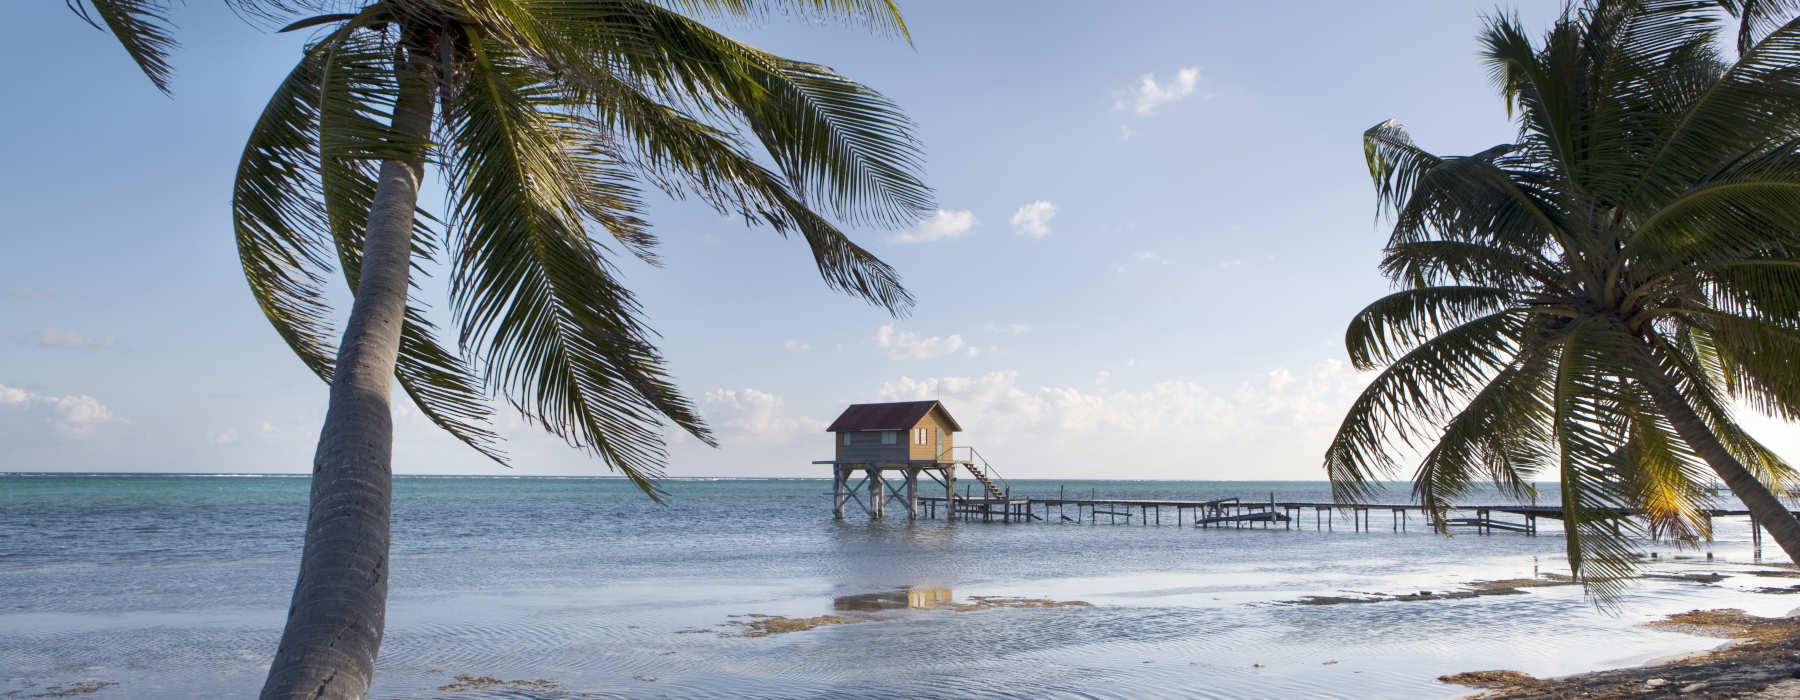 Belize<br class="hidden-md hidden-lg" /> Winter Sun Holidays